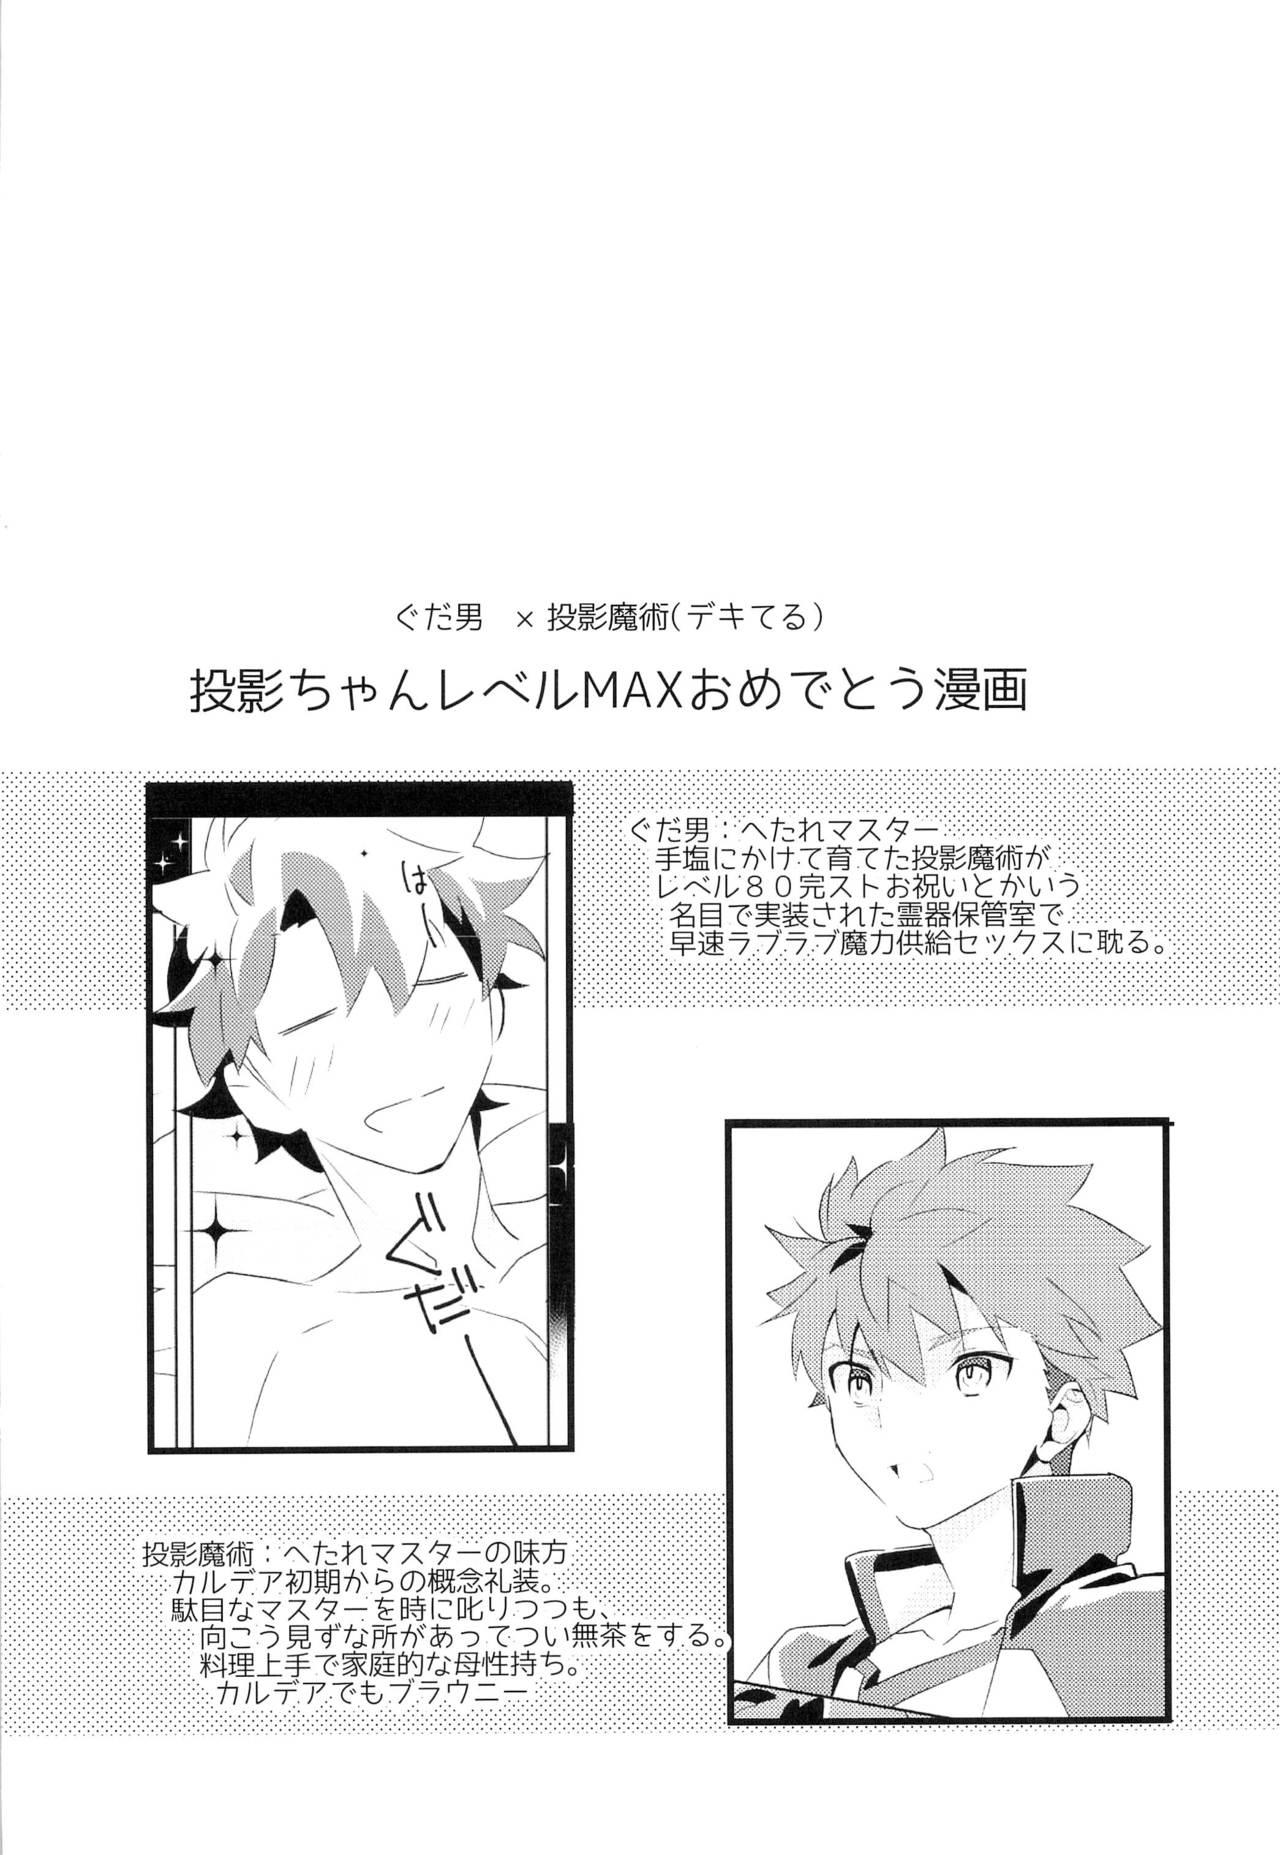 Rubia Master no Mikata - Fate grand order Reverse - Page 4